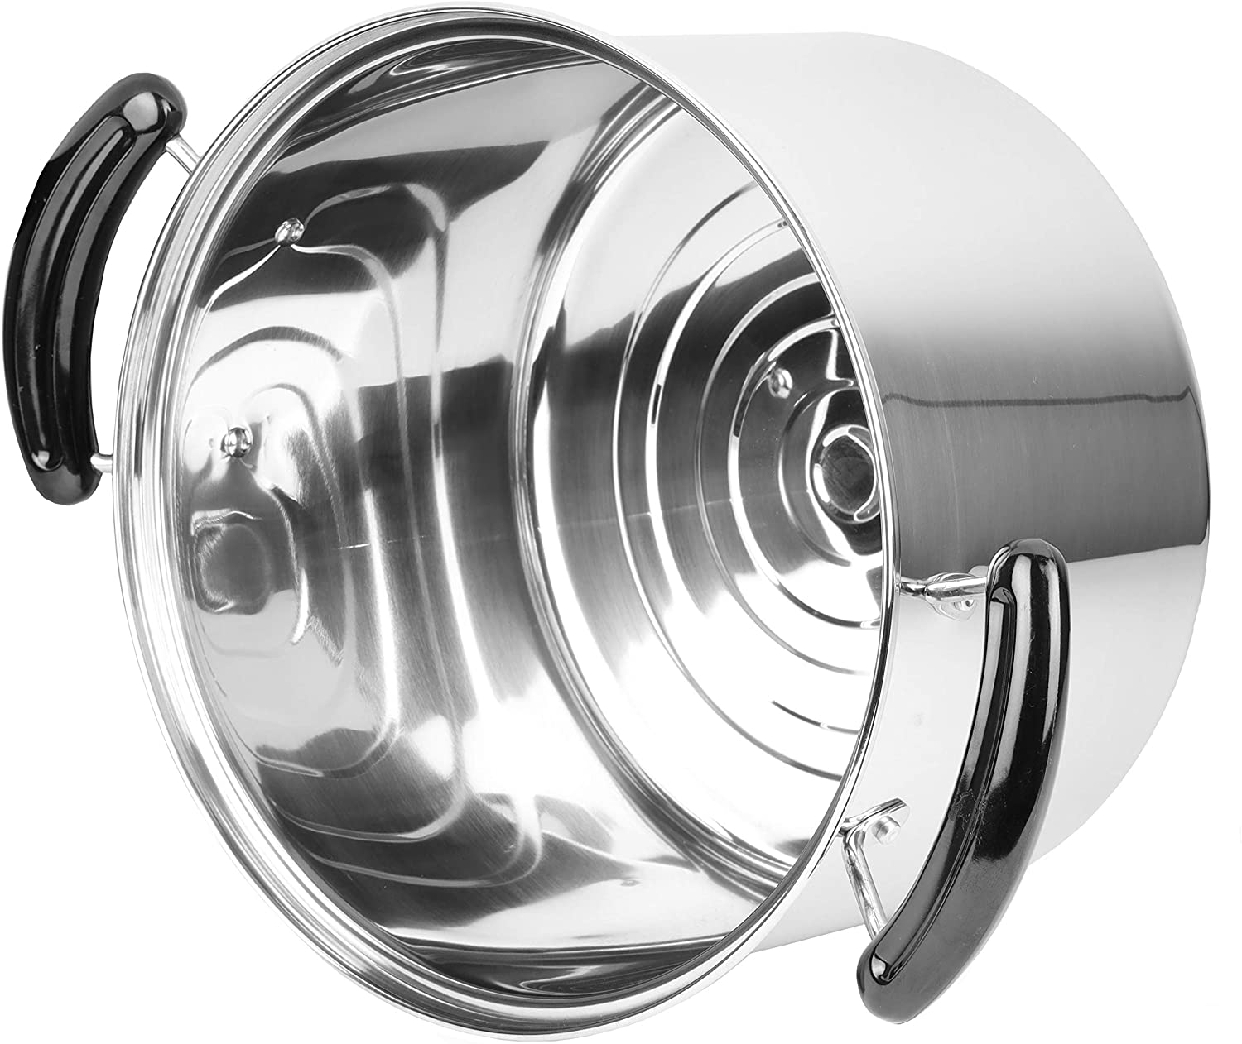 パール金属(PEARL) NEWだんらん 兼用鍋 ガラス鍋蓋付 H-5873の商品画像6 